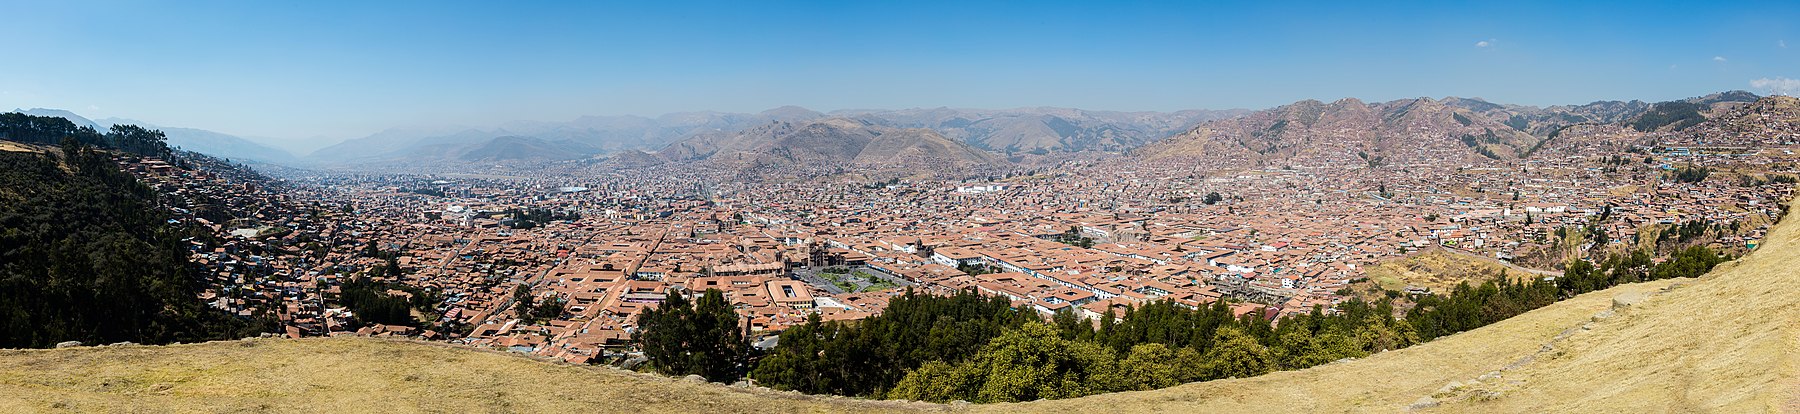 Una vista panorámica dende Sacsayhuamán de la ciudá del Cuzco, Perú.